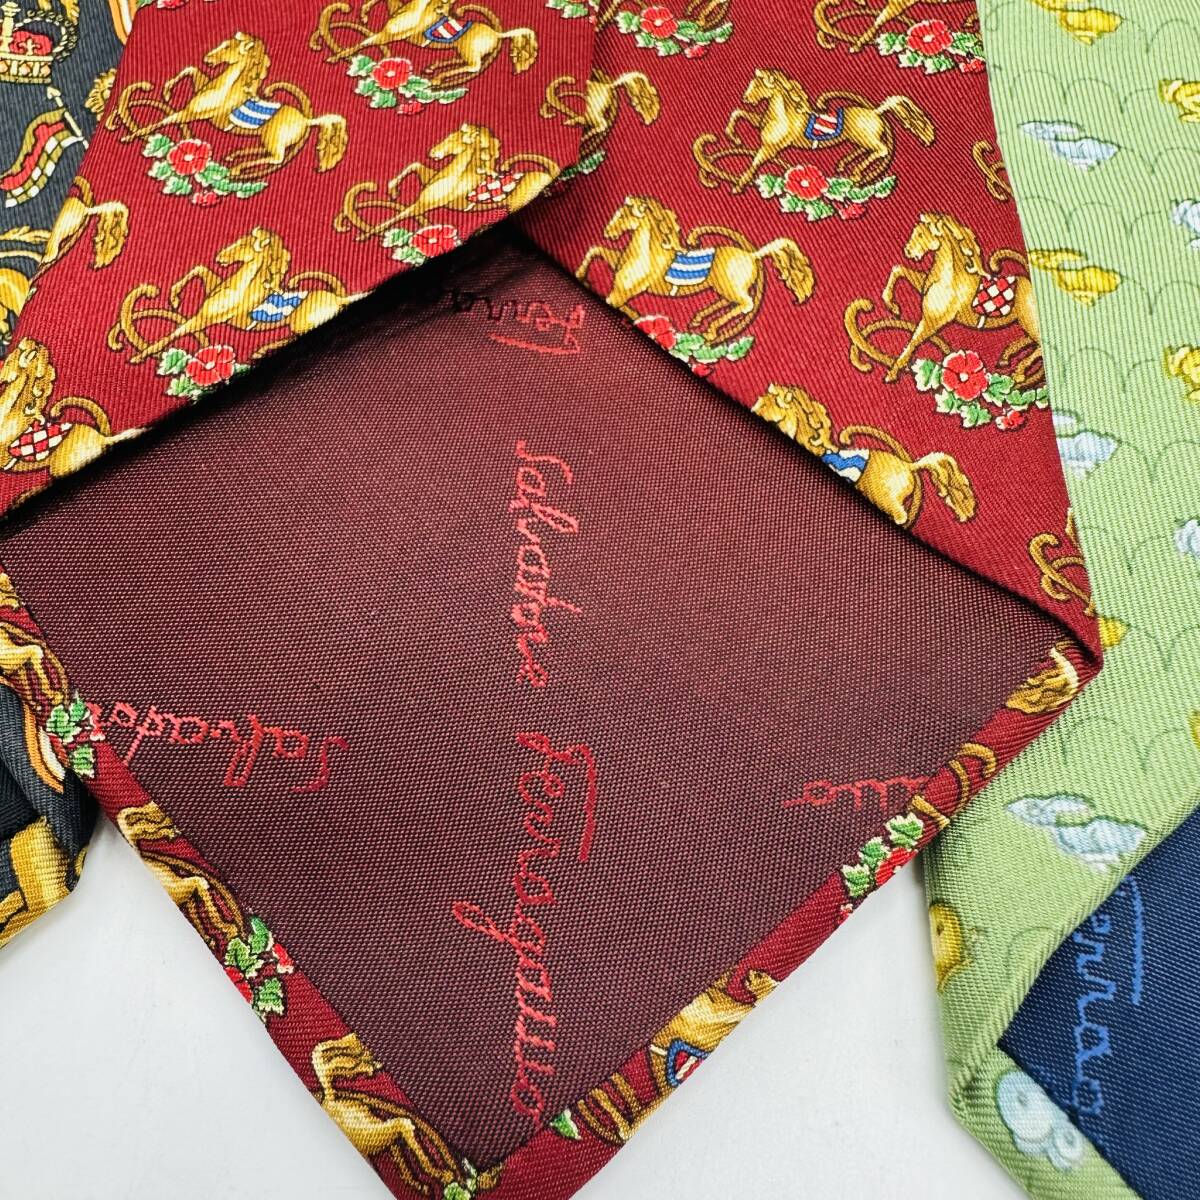  Ferragamo галстук суммировать Ferragamo Burberrys 1 иен лот 4 шт. комплект мужской б/у одежда высокий бренд текущее состояние товар Bubble симпатичный 15903